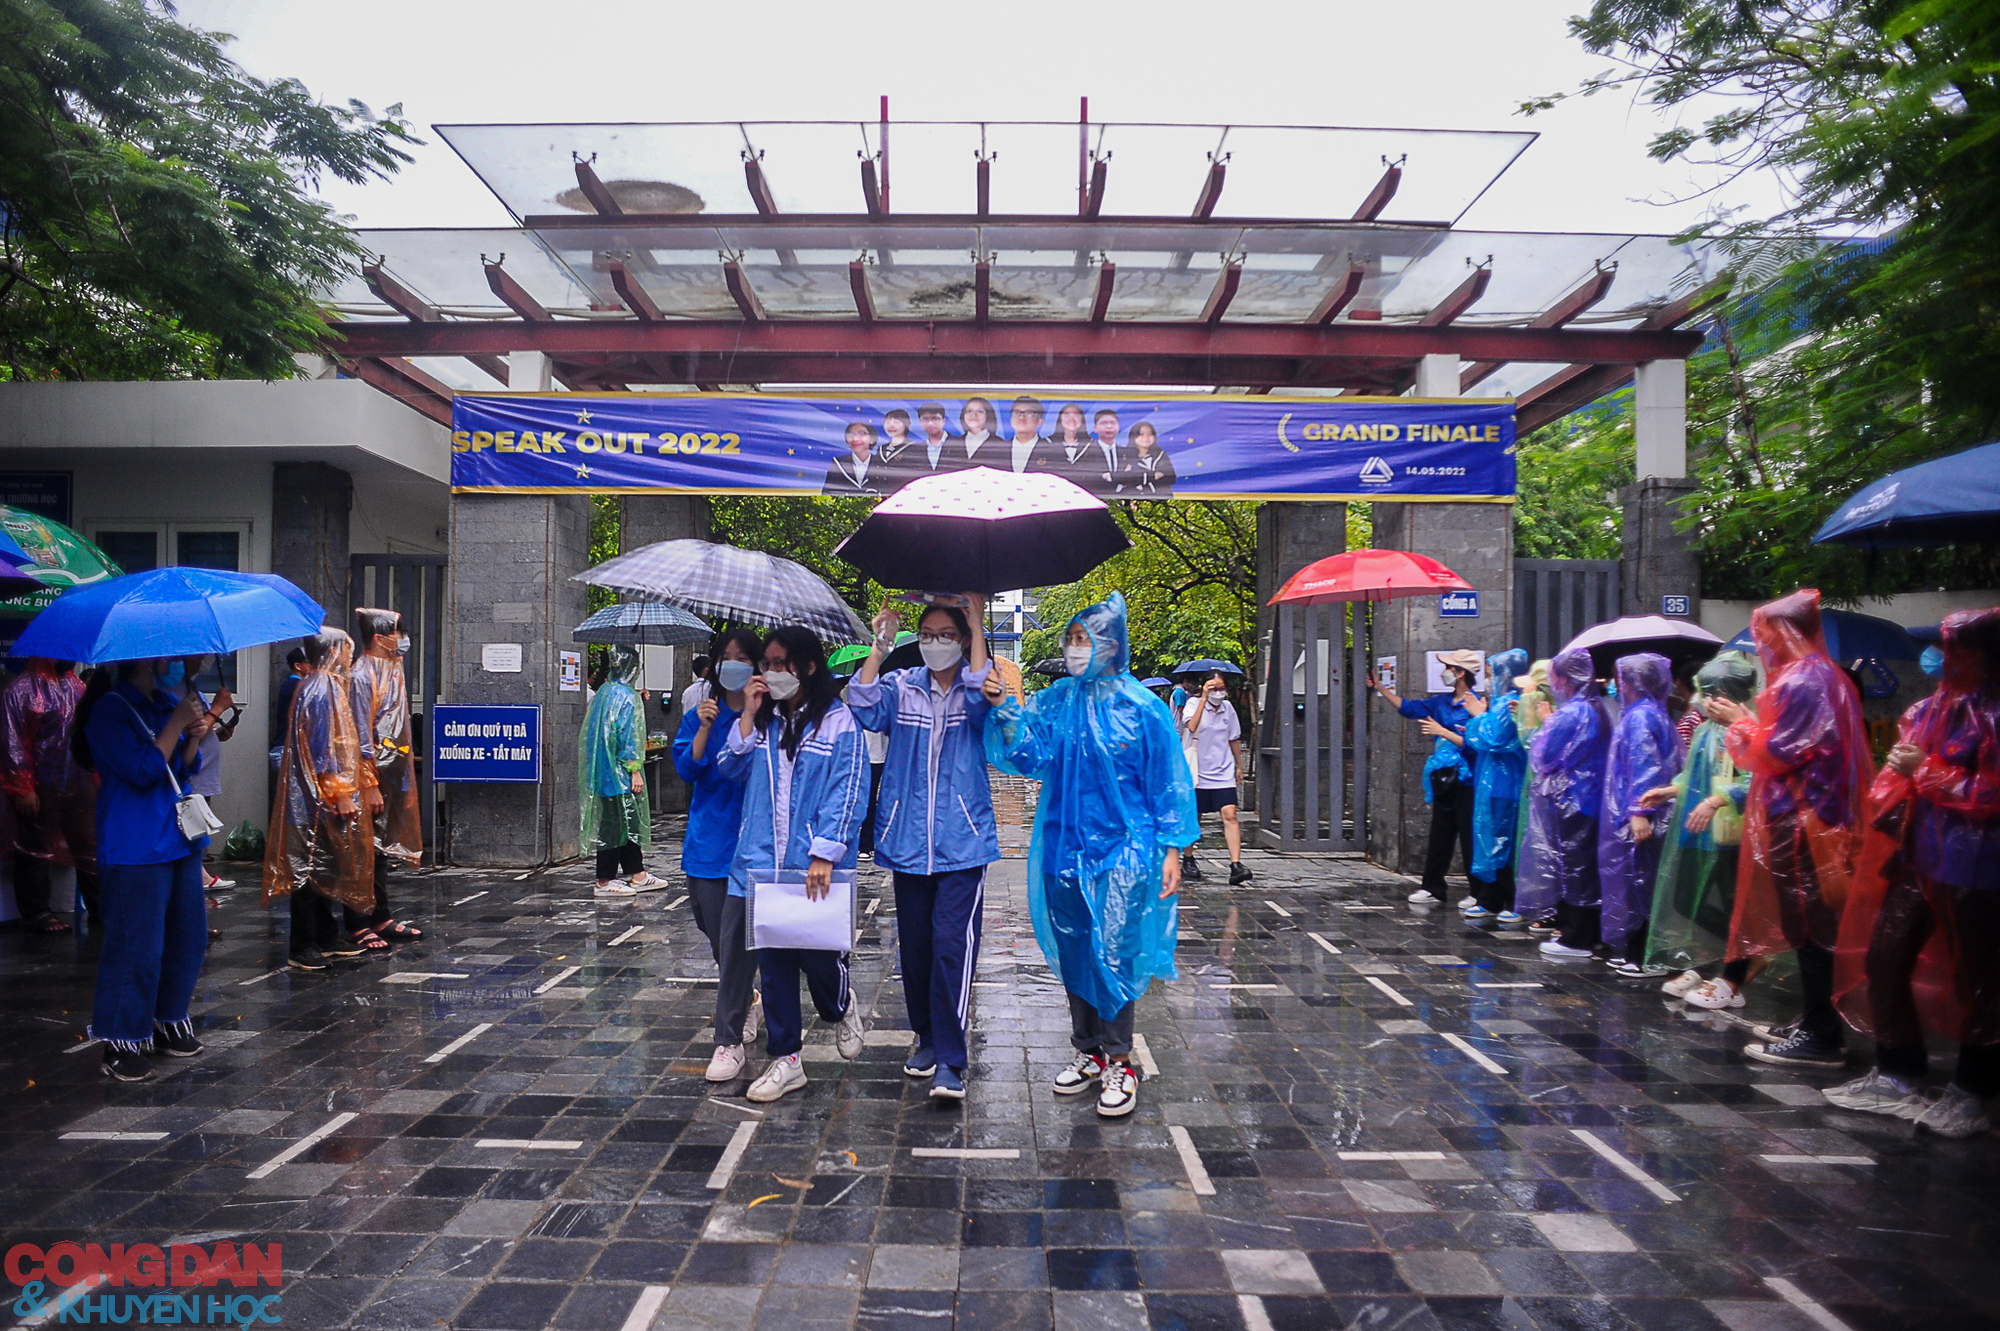 Hà Nội: Thí sinh hoàn thành ngày thi tốt nghiệp đầu tiên trong mưa - Ảnh 1.